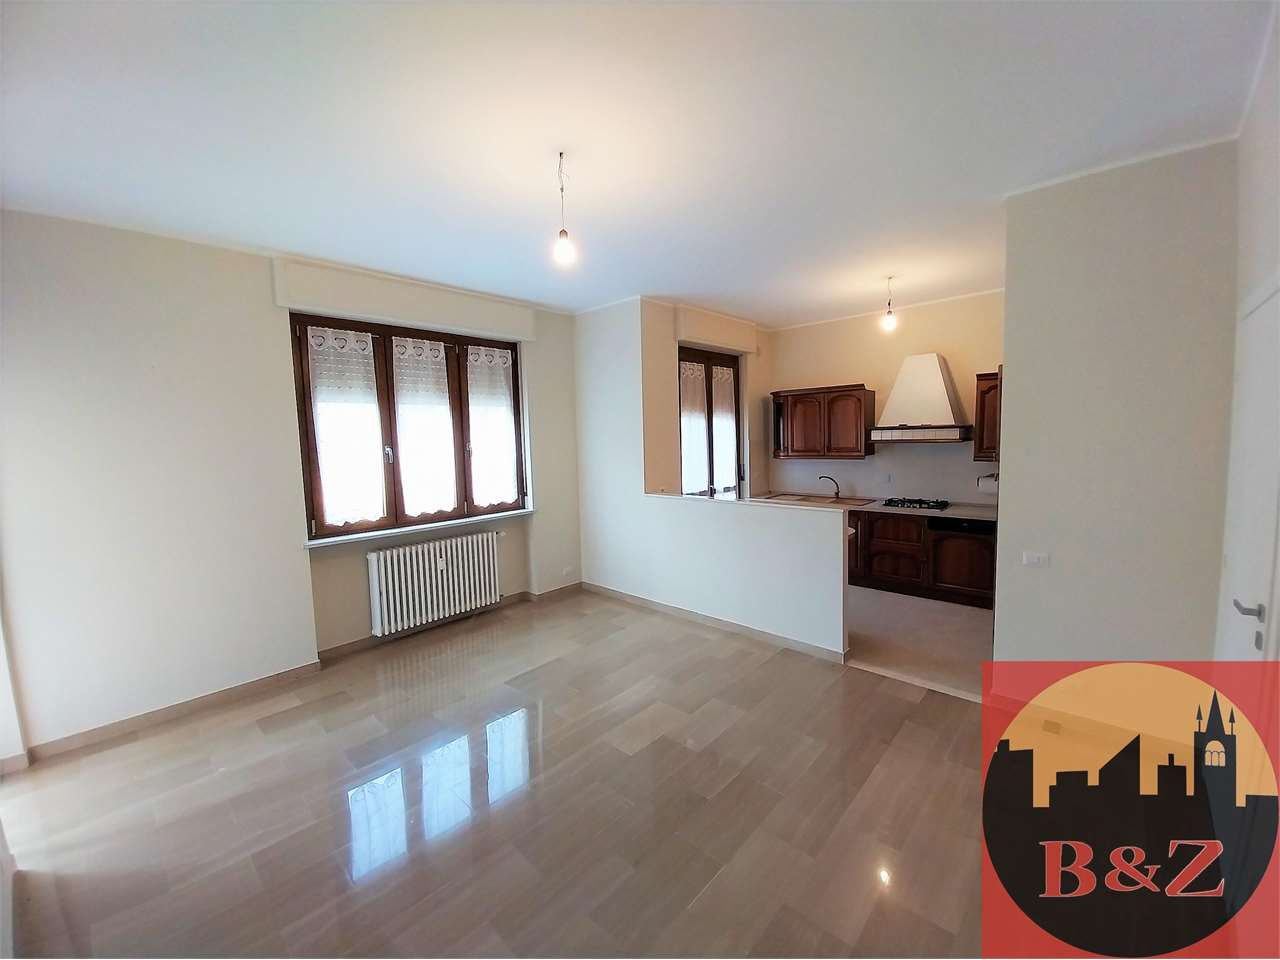 Appartamento in vendita a Condove, 5 locali, prezzo € 175.000 | PortaleAgenzieImmobiliari.it